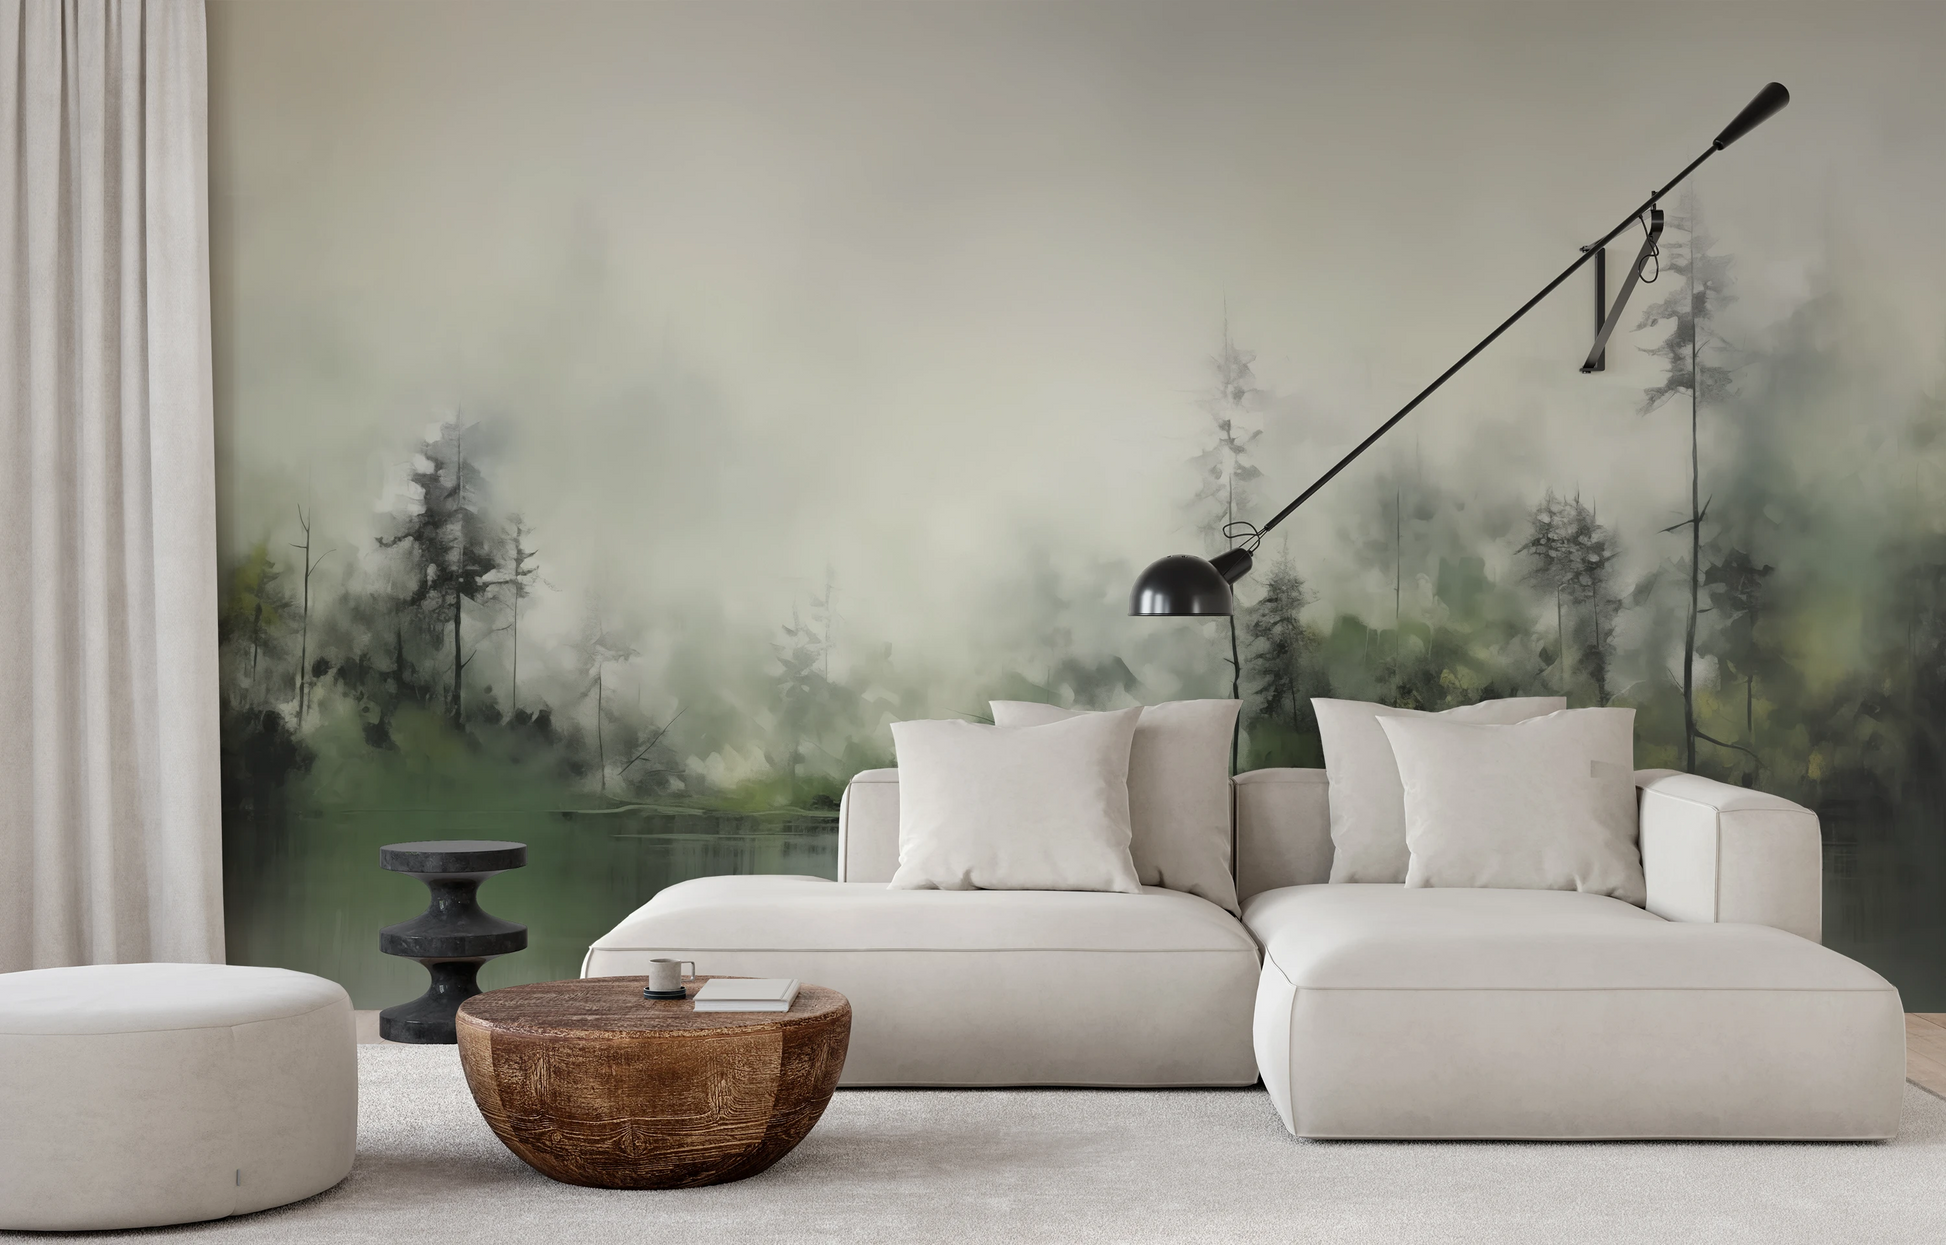 Fototapeta malowana o nazwie Leśna Melancholia pokazana w aranżacji wnętrza.